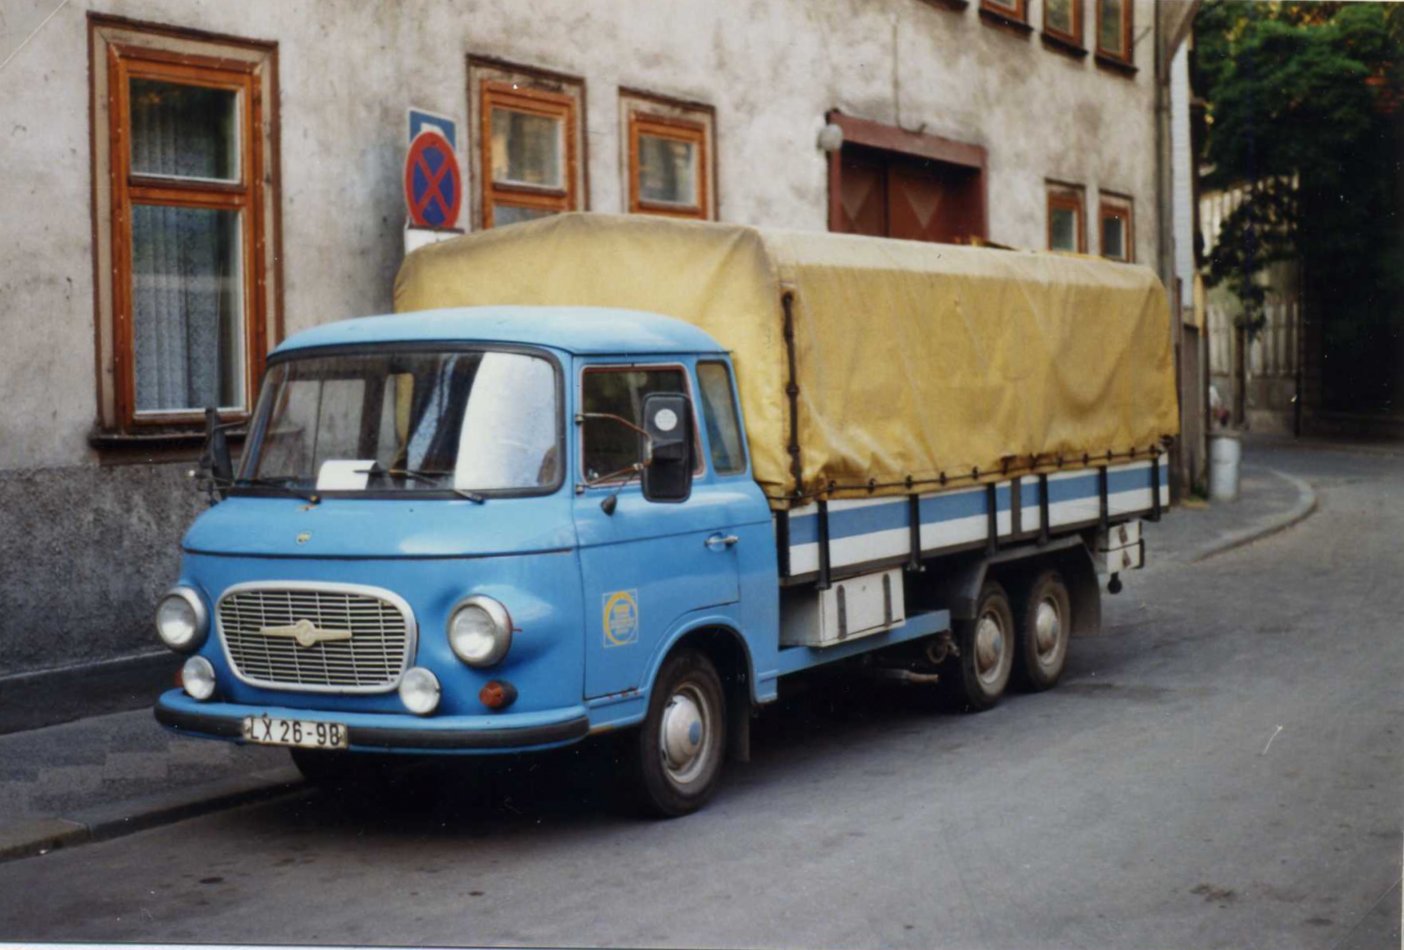 Barkas_B1000_twin-axle_LKW_LX_26-98,_Erfurt,_DDR,_August_1989_-_Flickr_-_sludgegulper